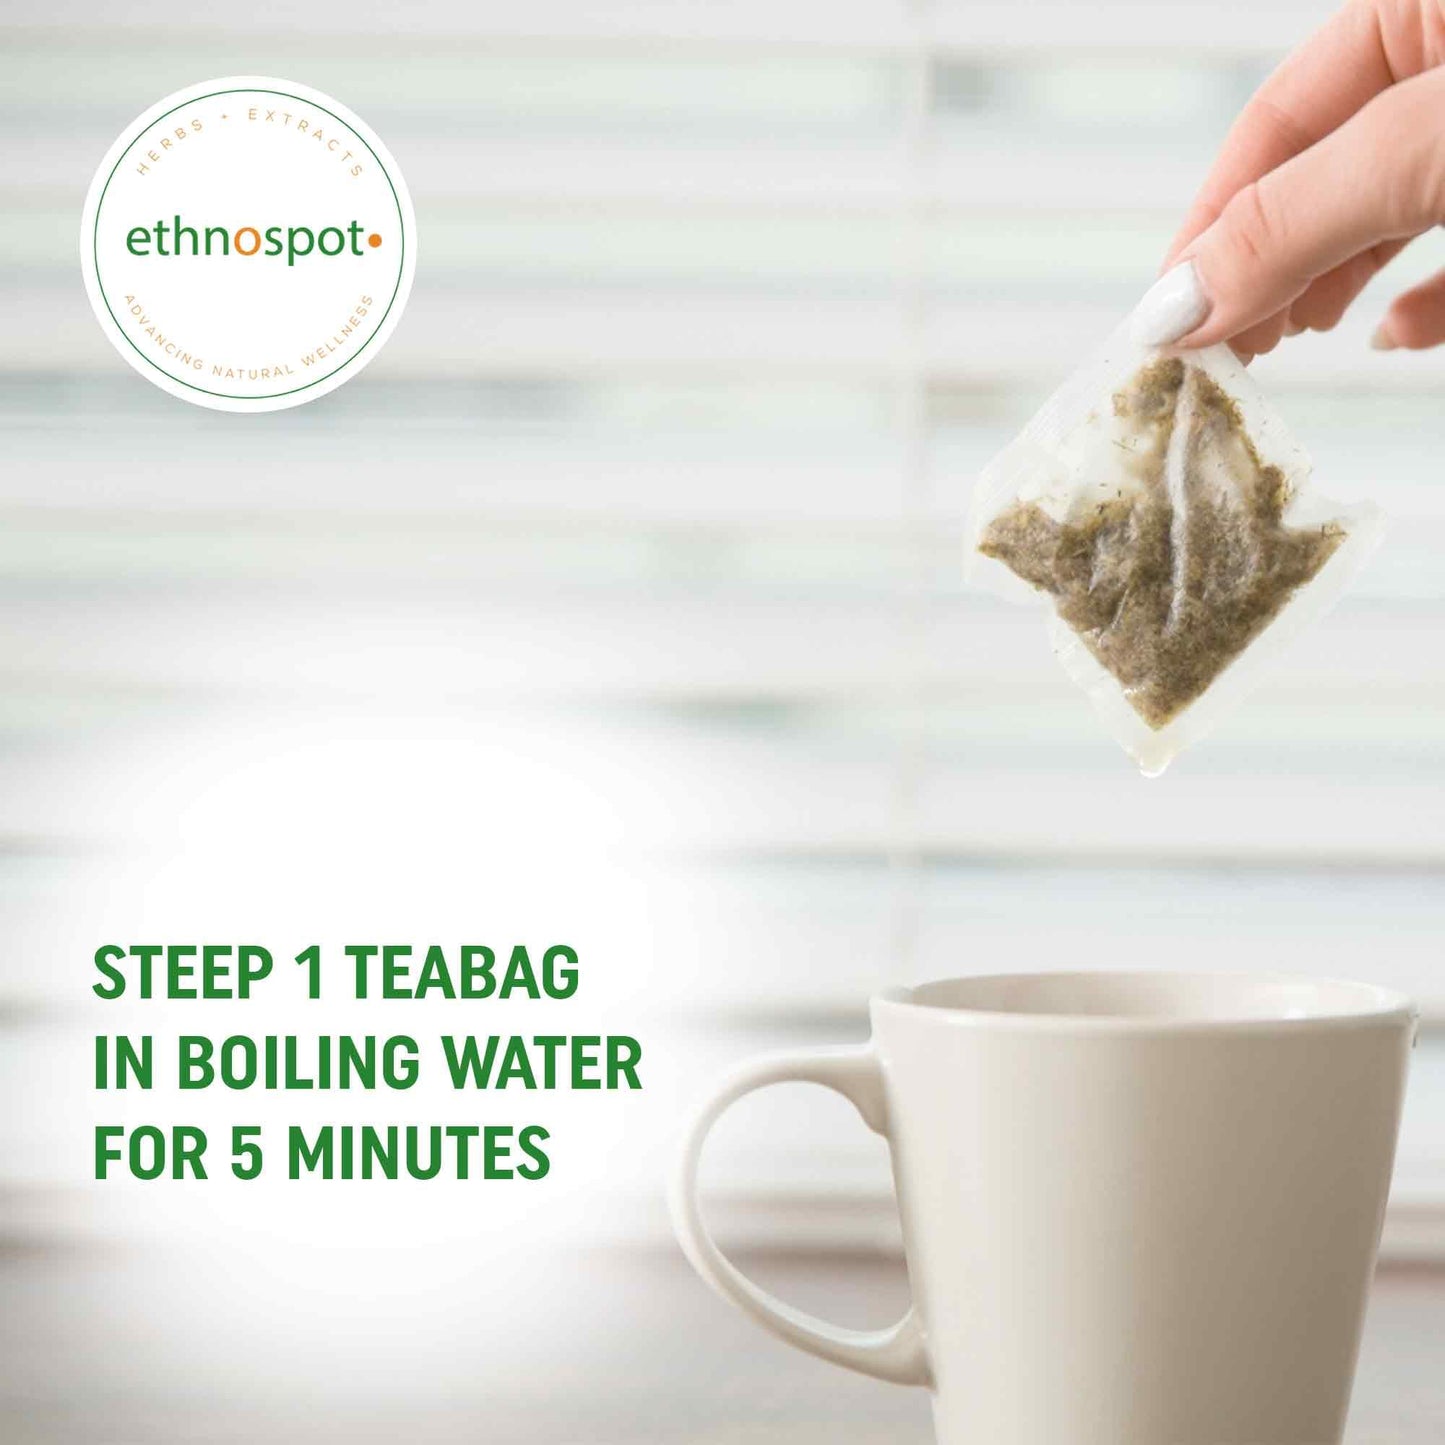 American Ginseng Root Teabags - Energy Boosting Herbal Tea